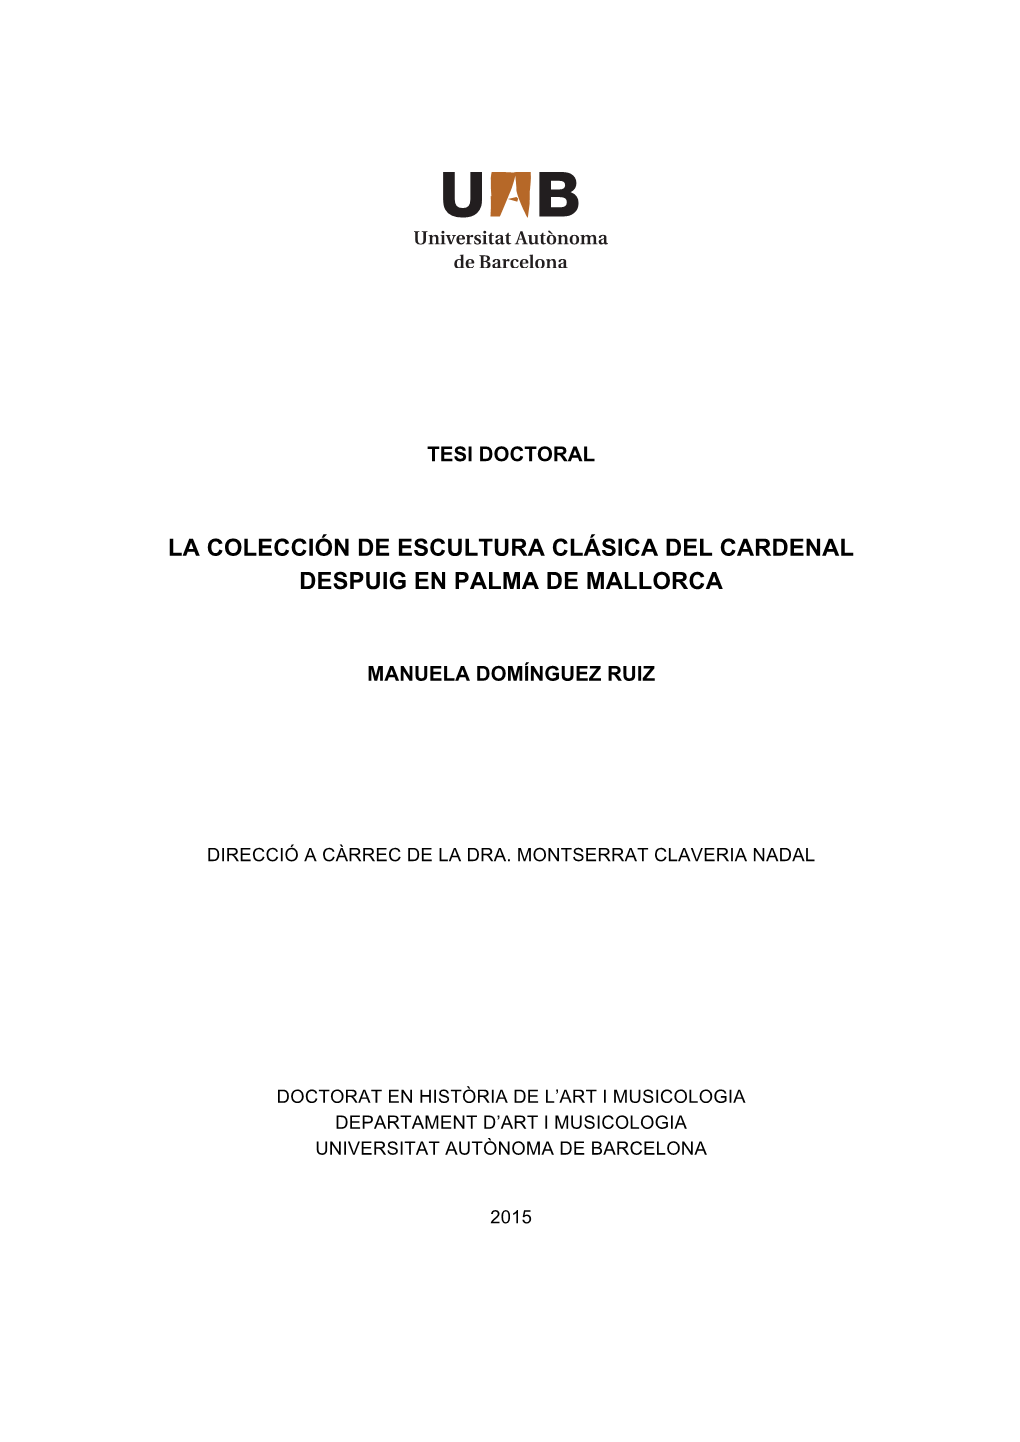 La Colección De Escultura Clásica Del Cardenal Despuig En Palma De Mallorca